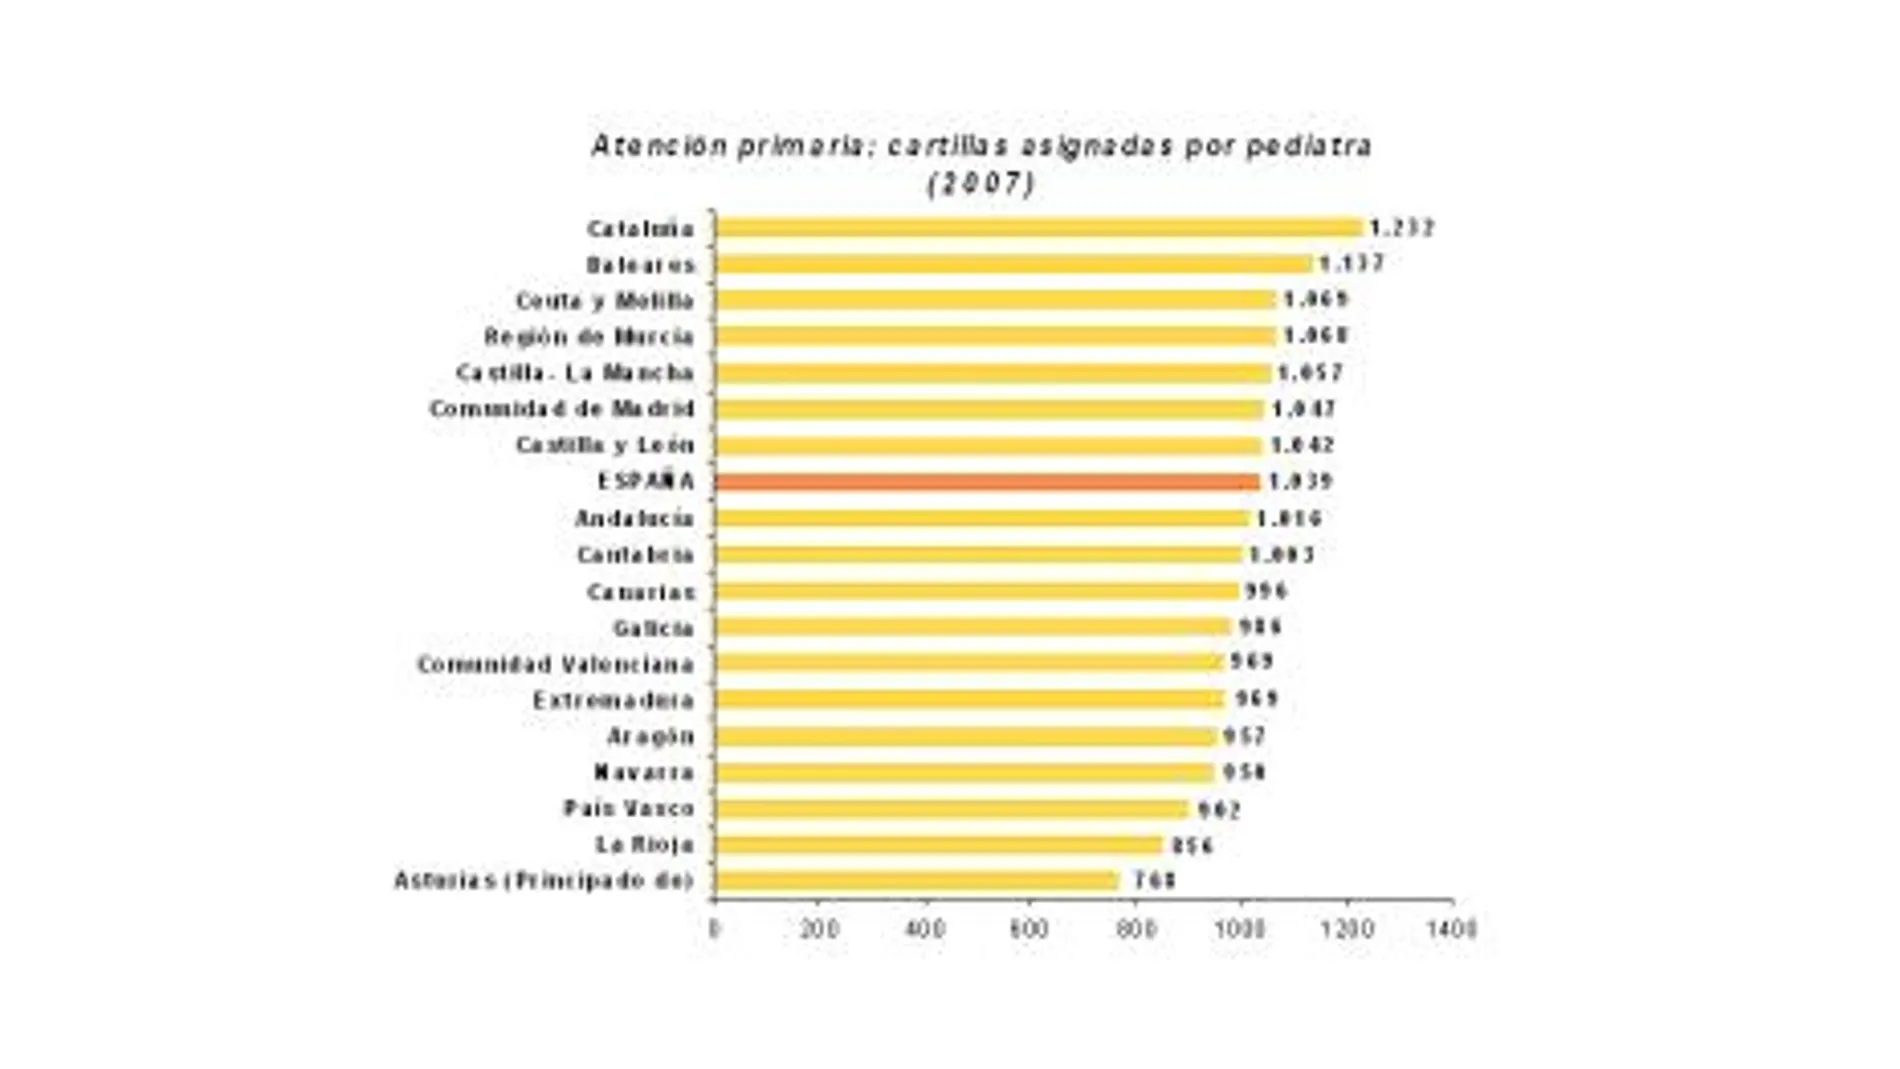 Los pediatras de atención primaria de Cataluña y Baleares, los más saturados de pacientes